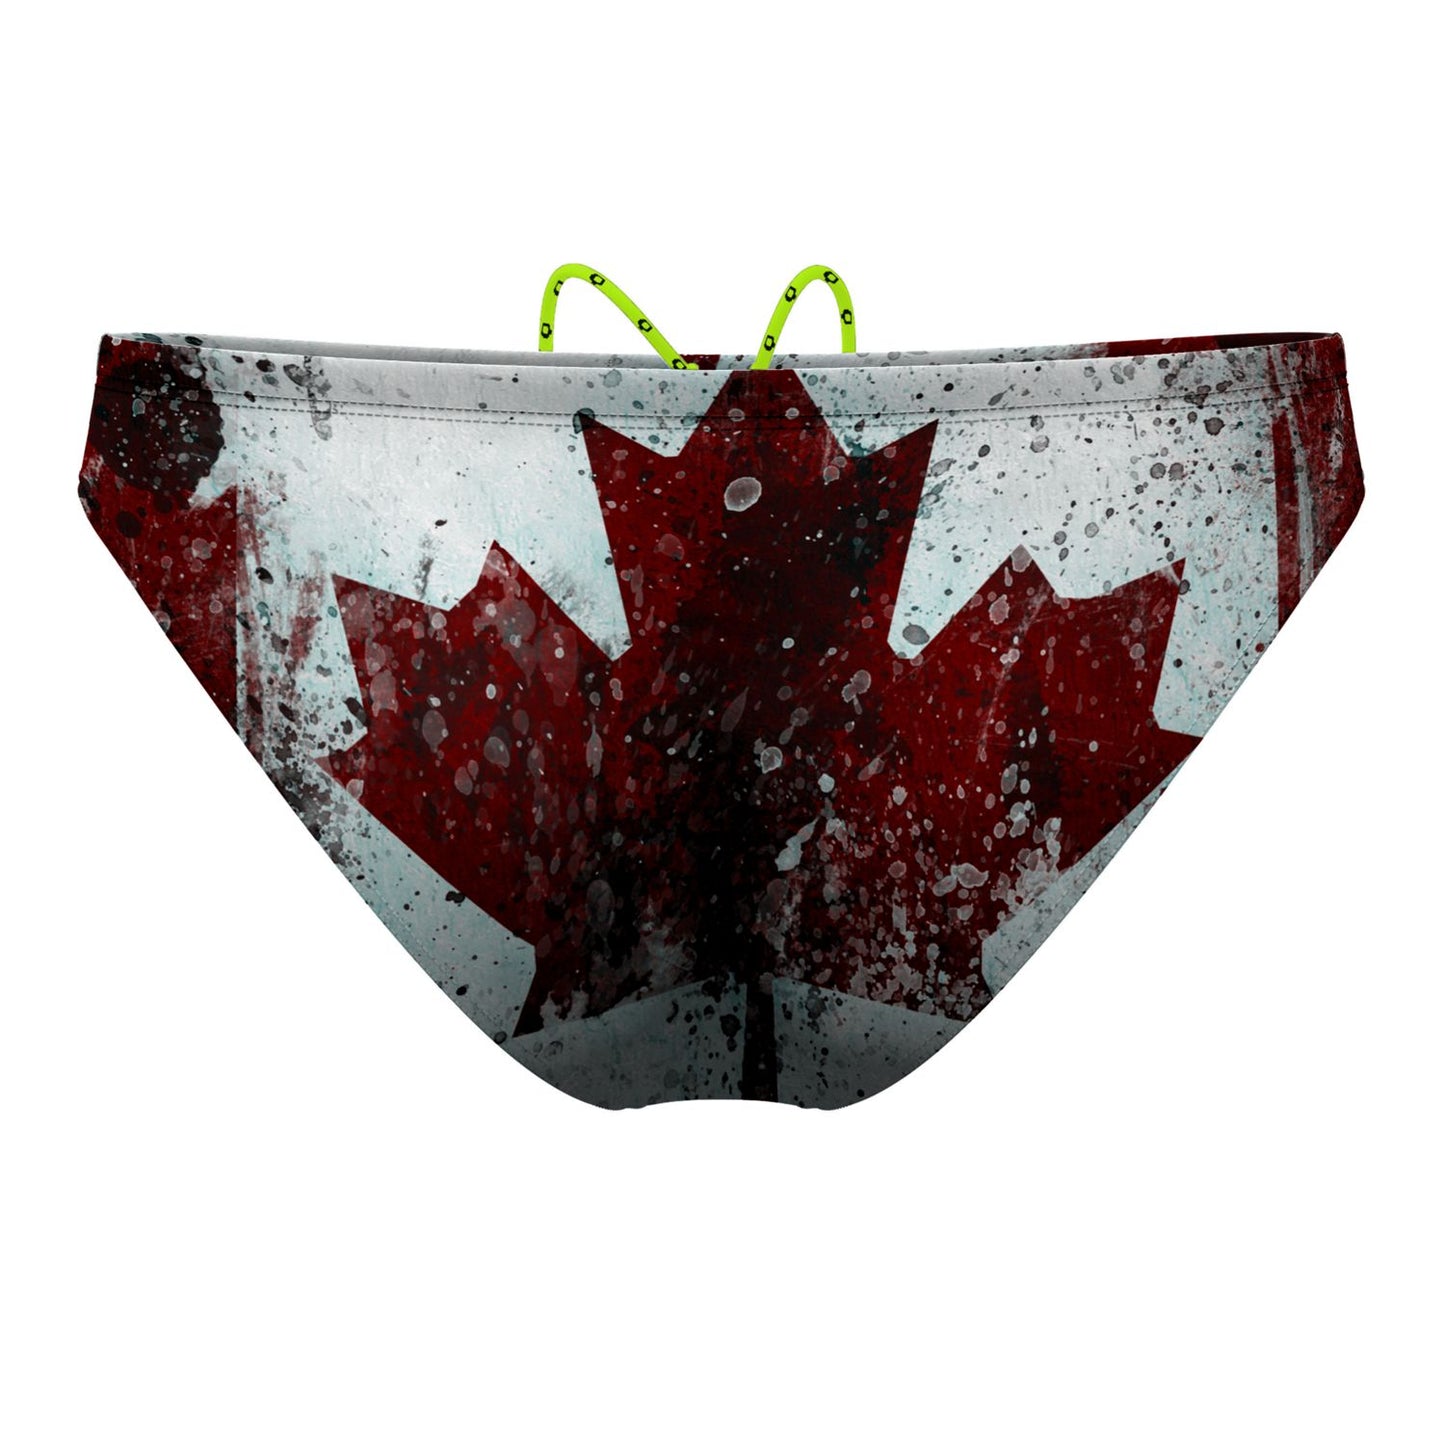 Canada 2.0 Waterpolo Brief Swimwear